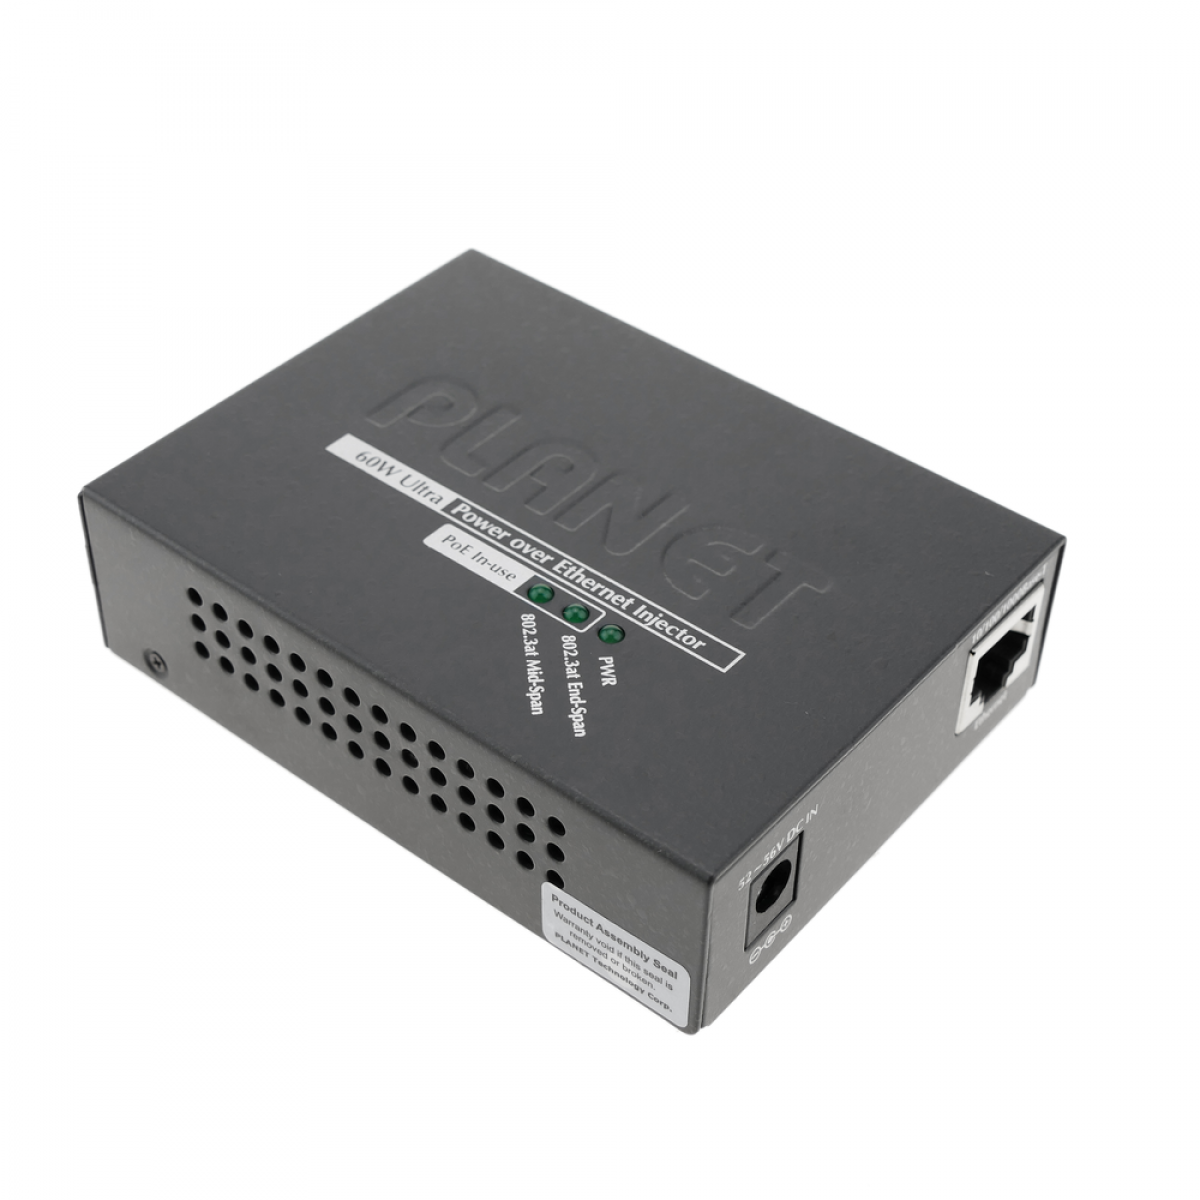 Bematik - Injecteur PoE Ultra Power over Ethernet IEEE802.3af/at 10/100/1000Mbps jusqu'à 54 VDC - Carte réseau